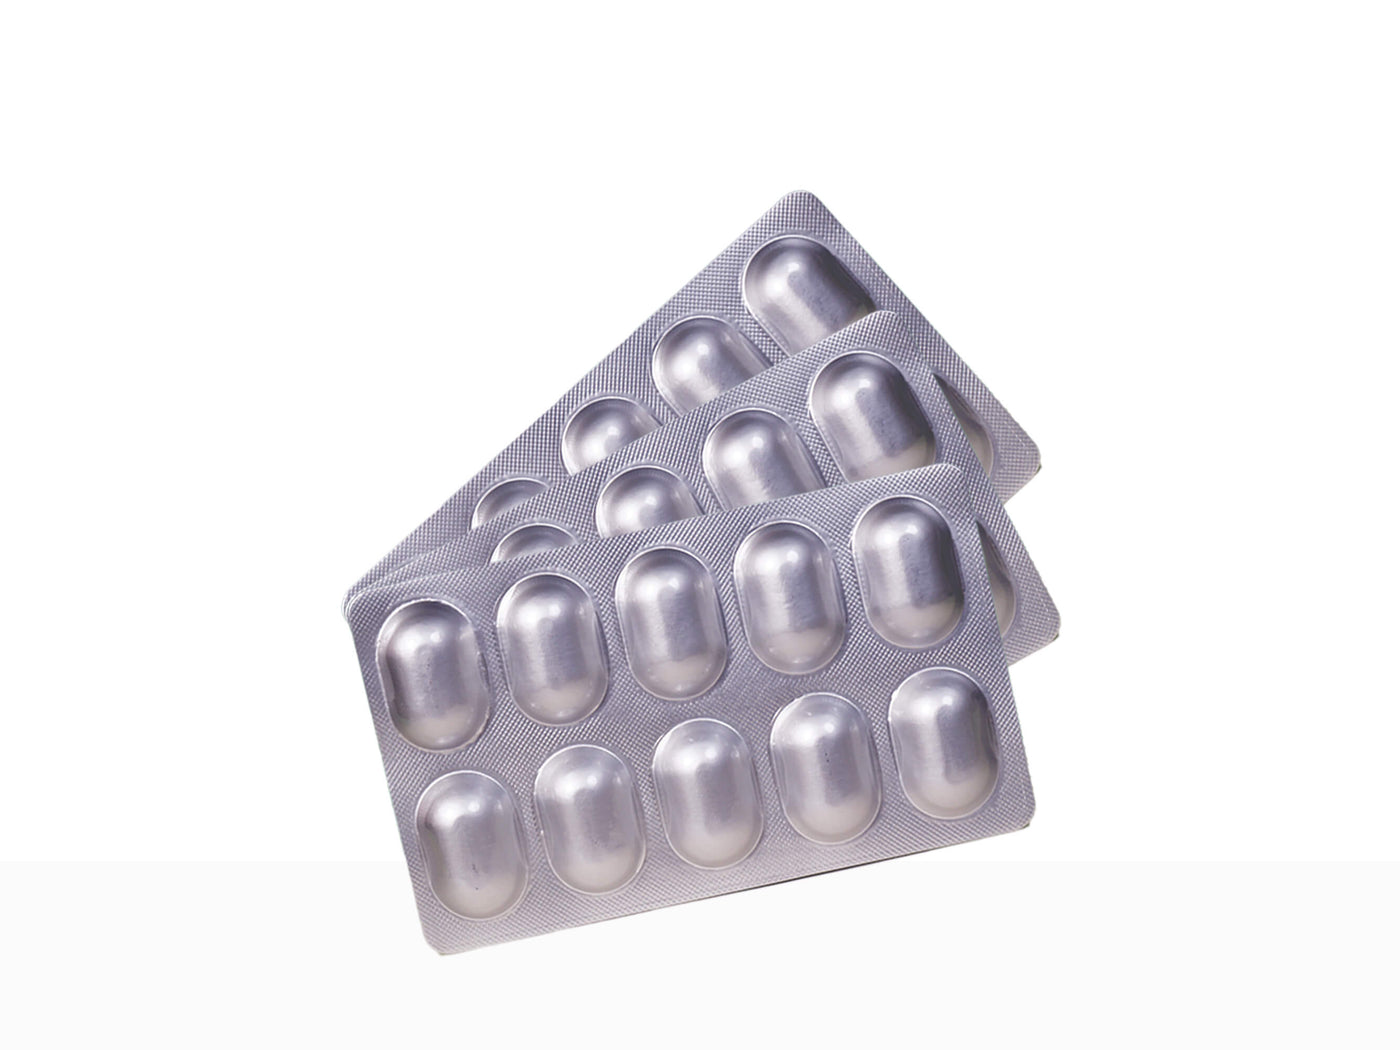 Glutone- Hydra Tablets - Clinikally